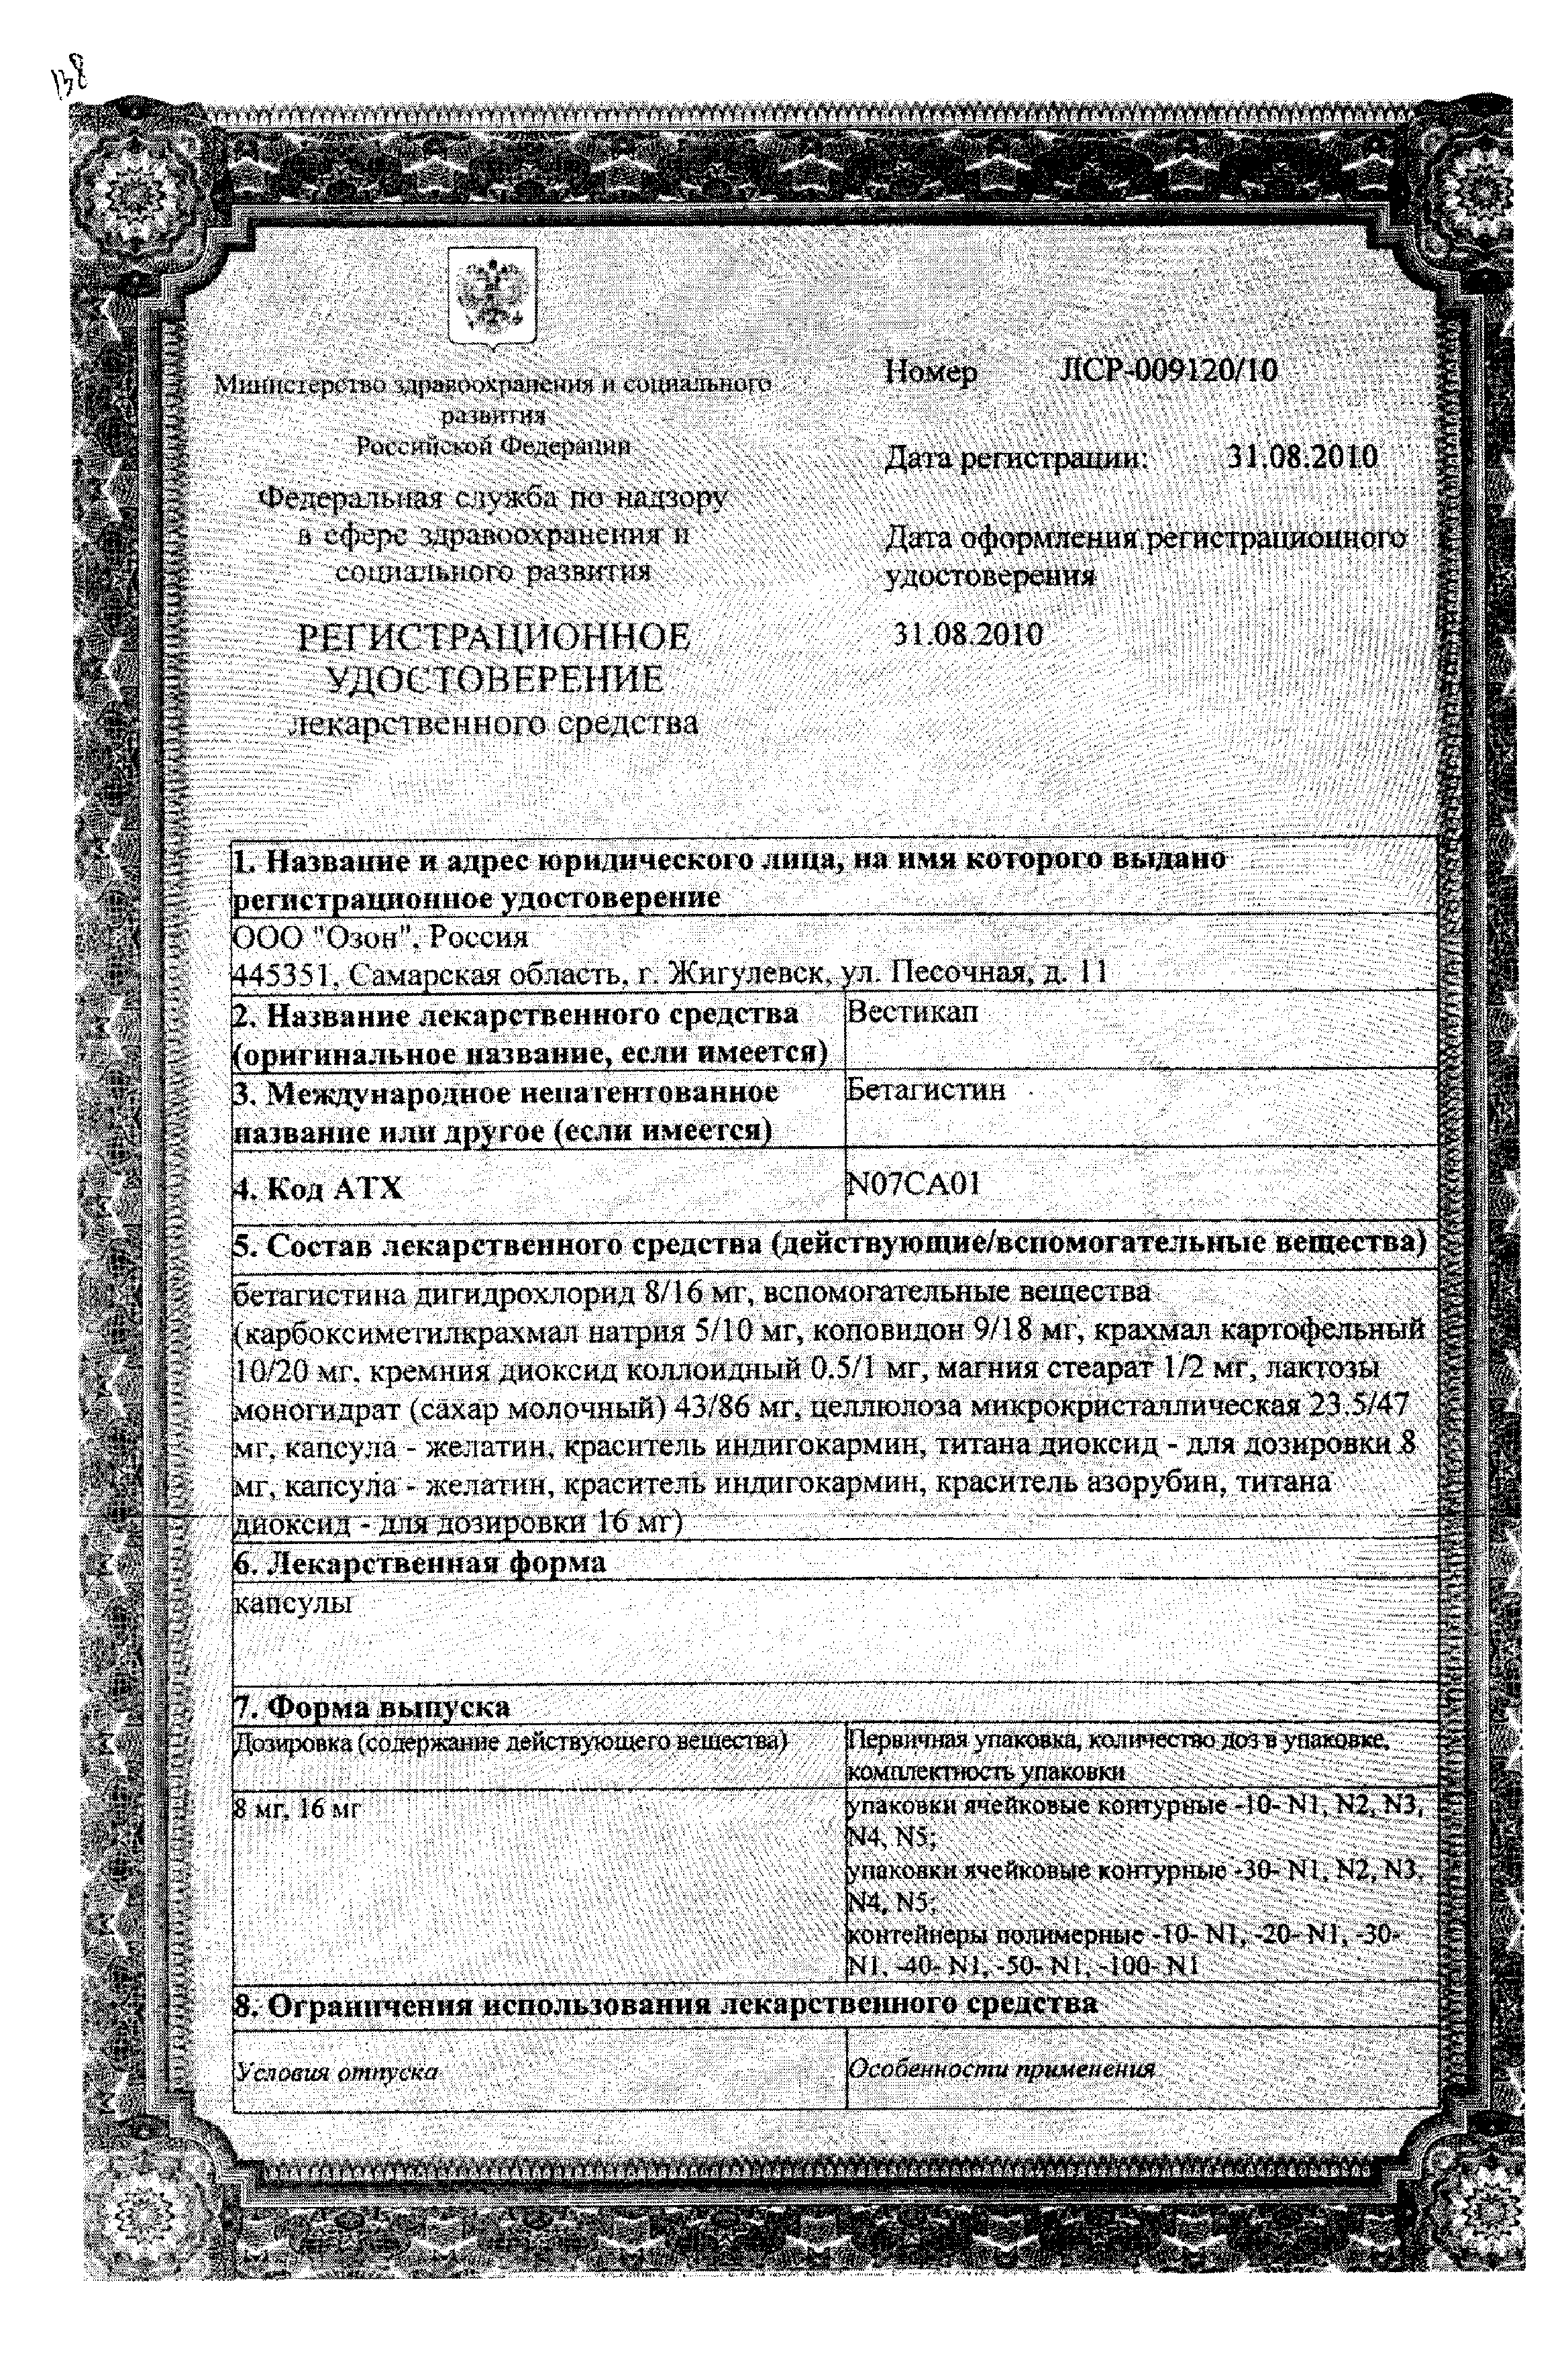 Вестикап сертификат